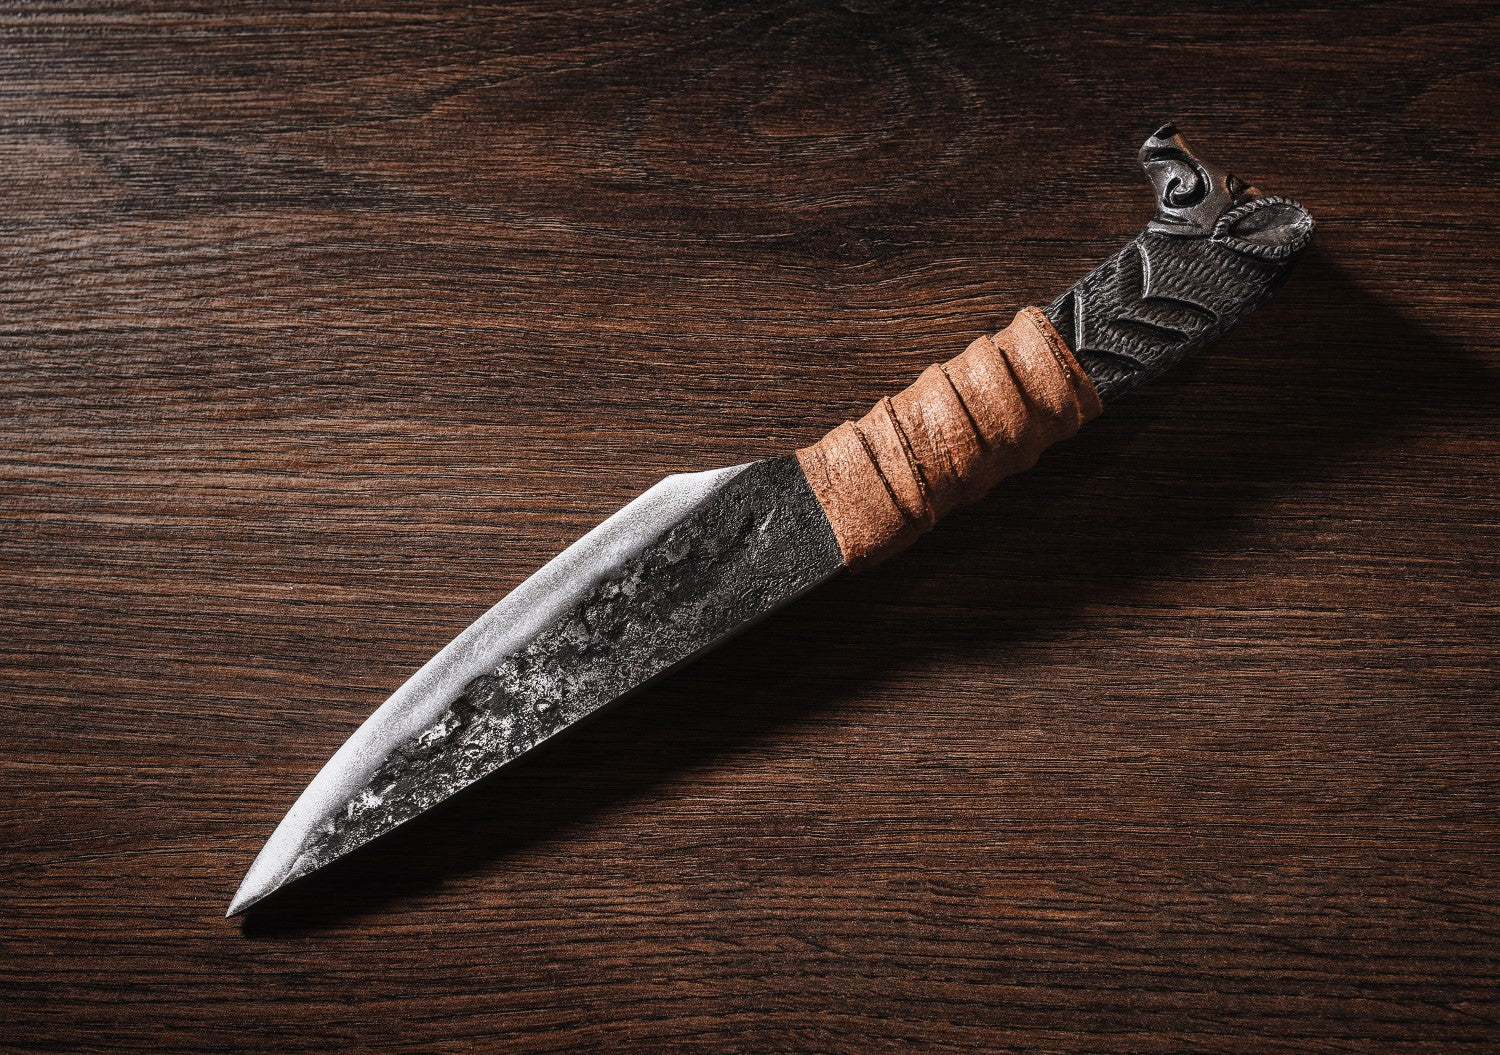 Viking Boar's Head Knife - 5.5" Blade